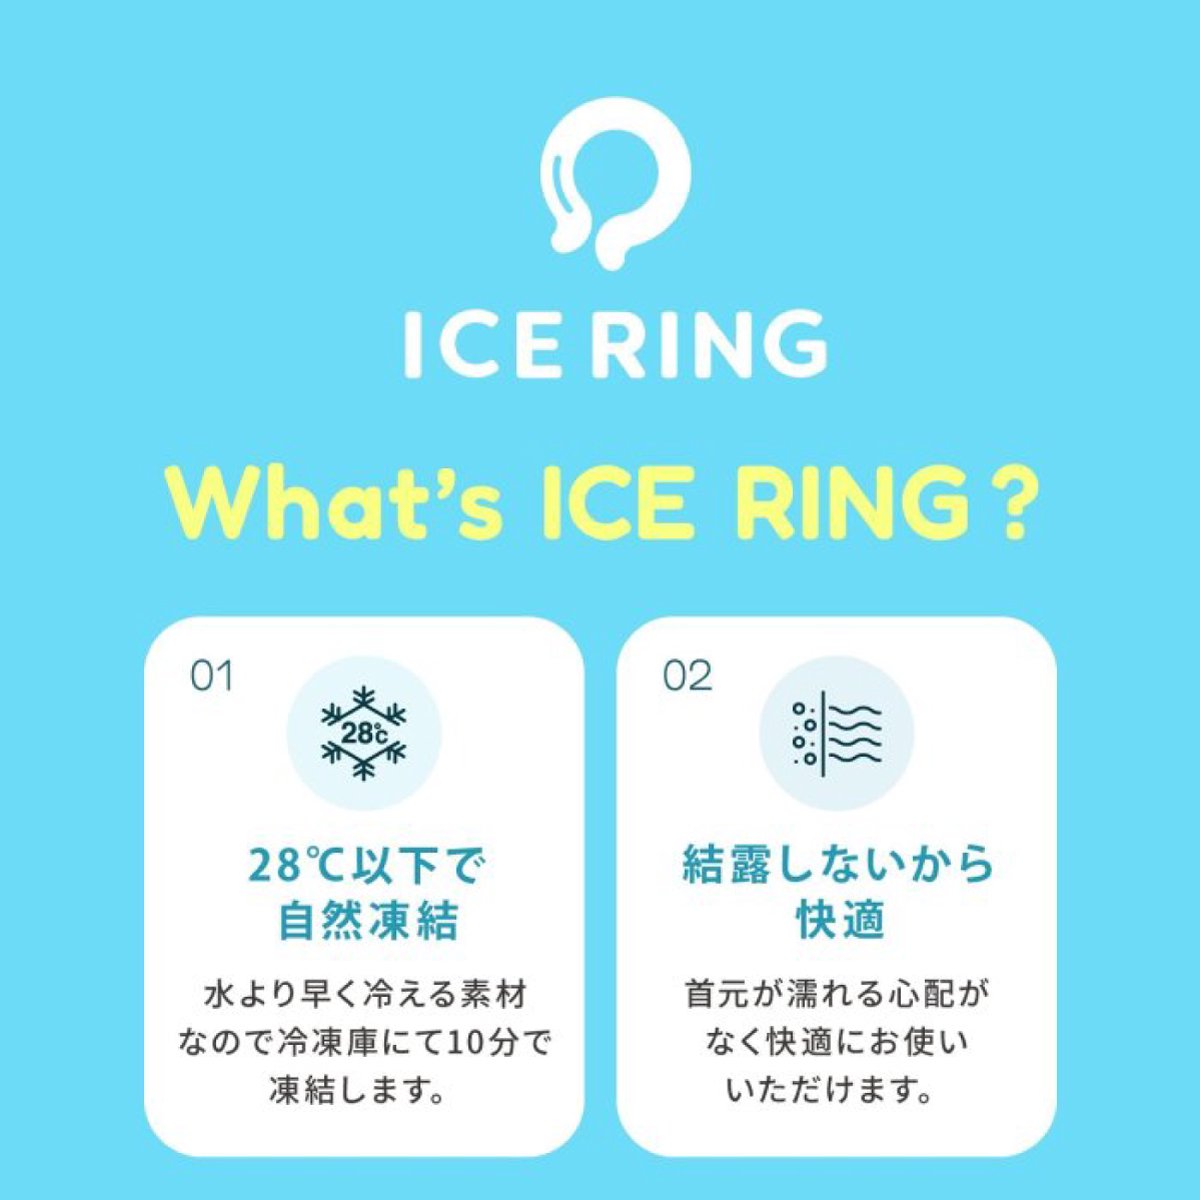 ICE RING【Sサイズ】 詳細画像13